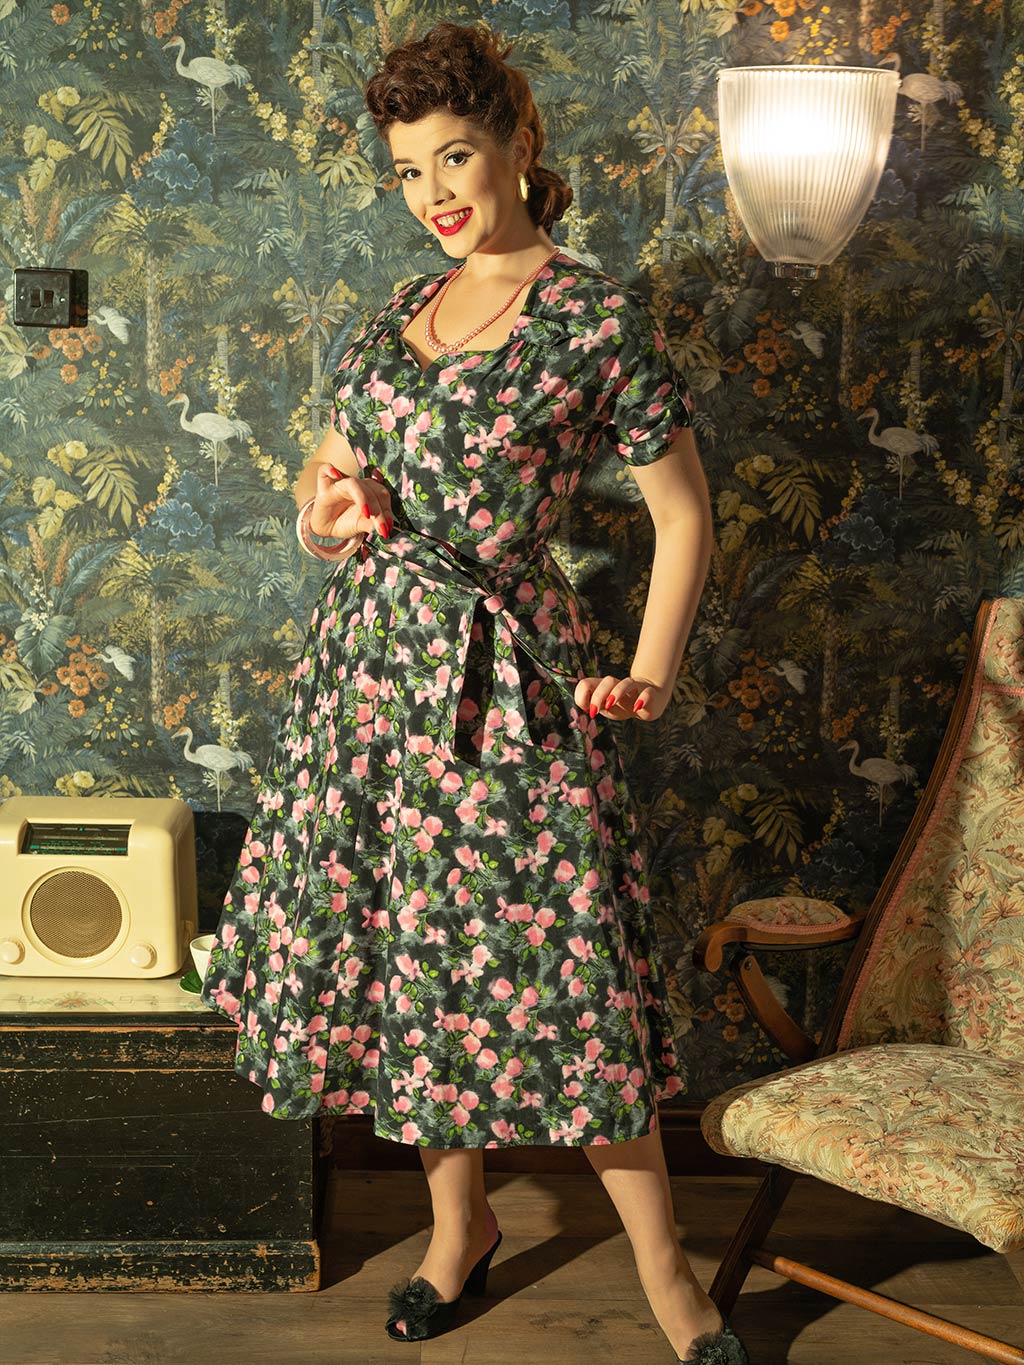 1940s dresses